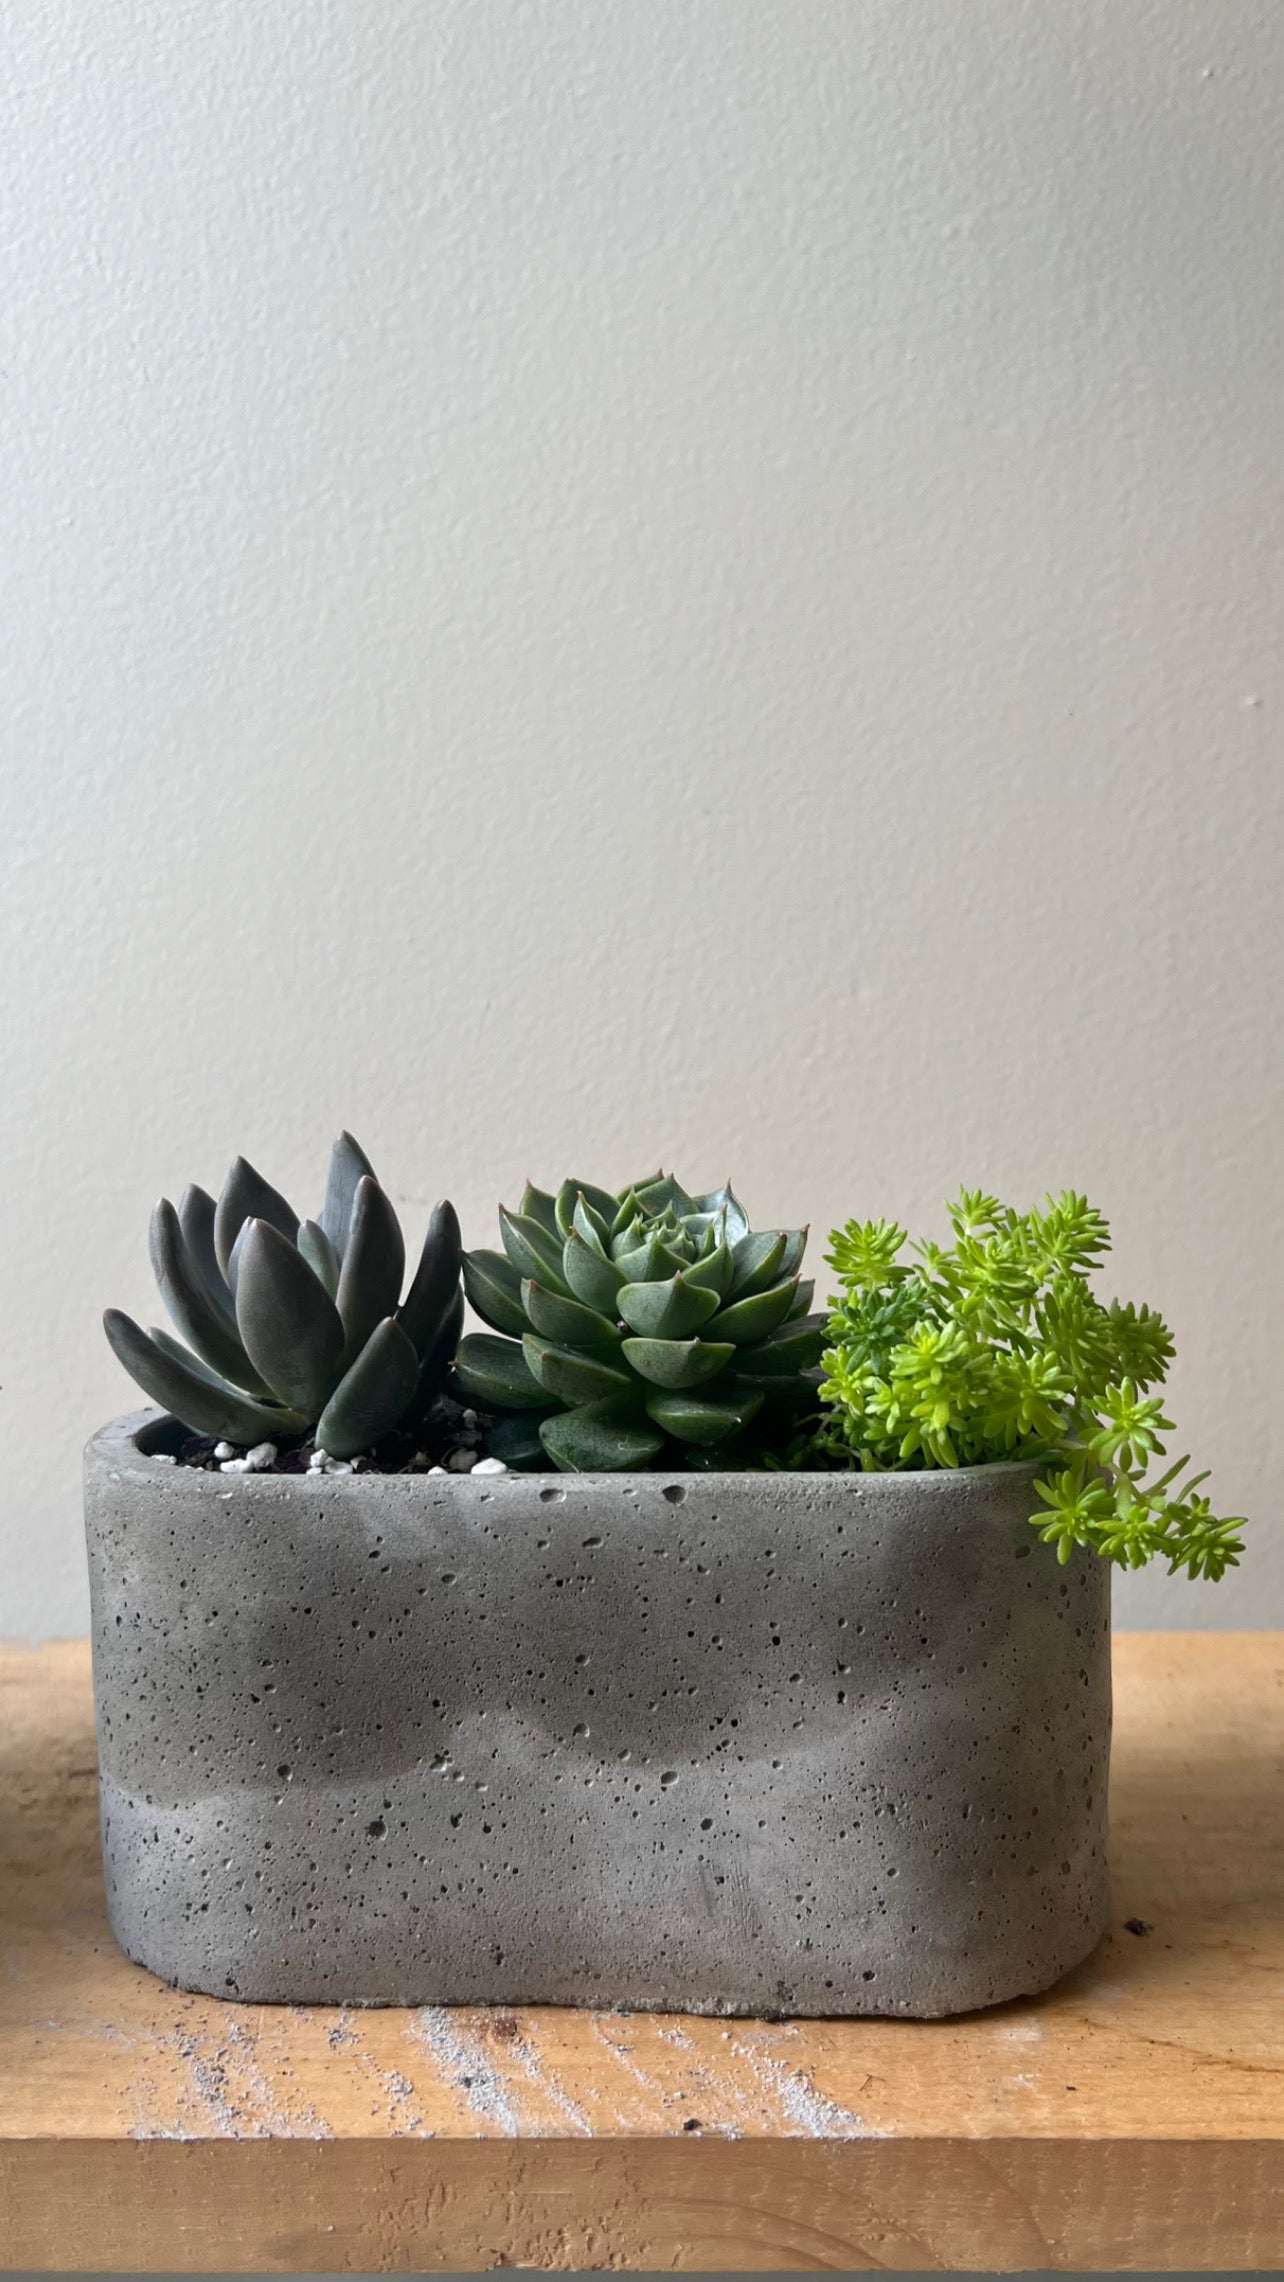 Succulents in concrete pots